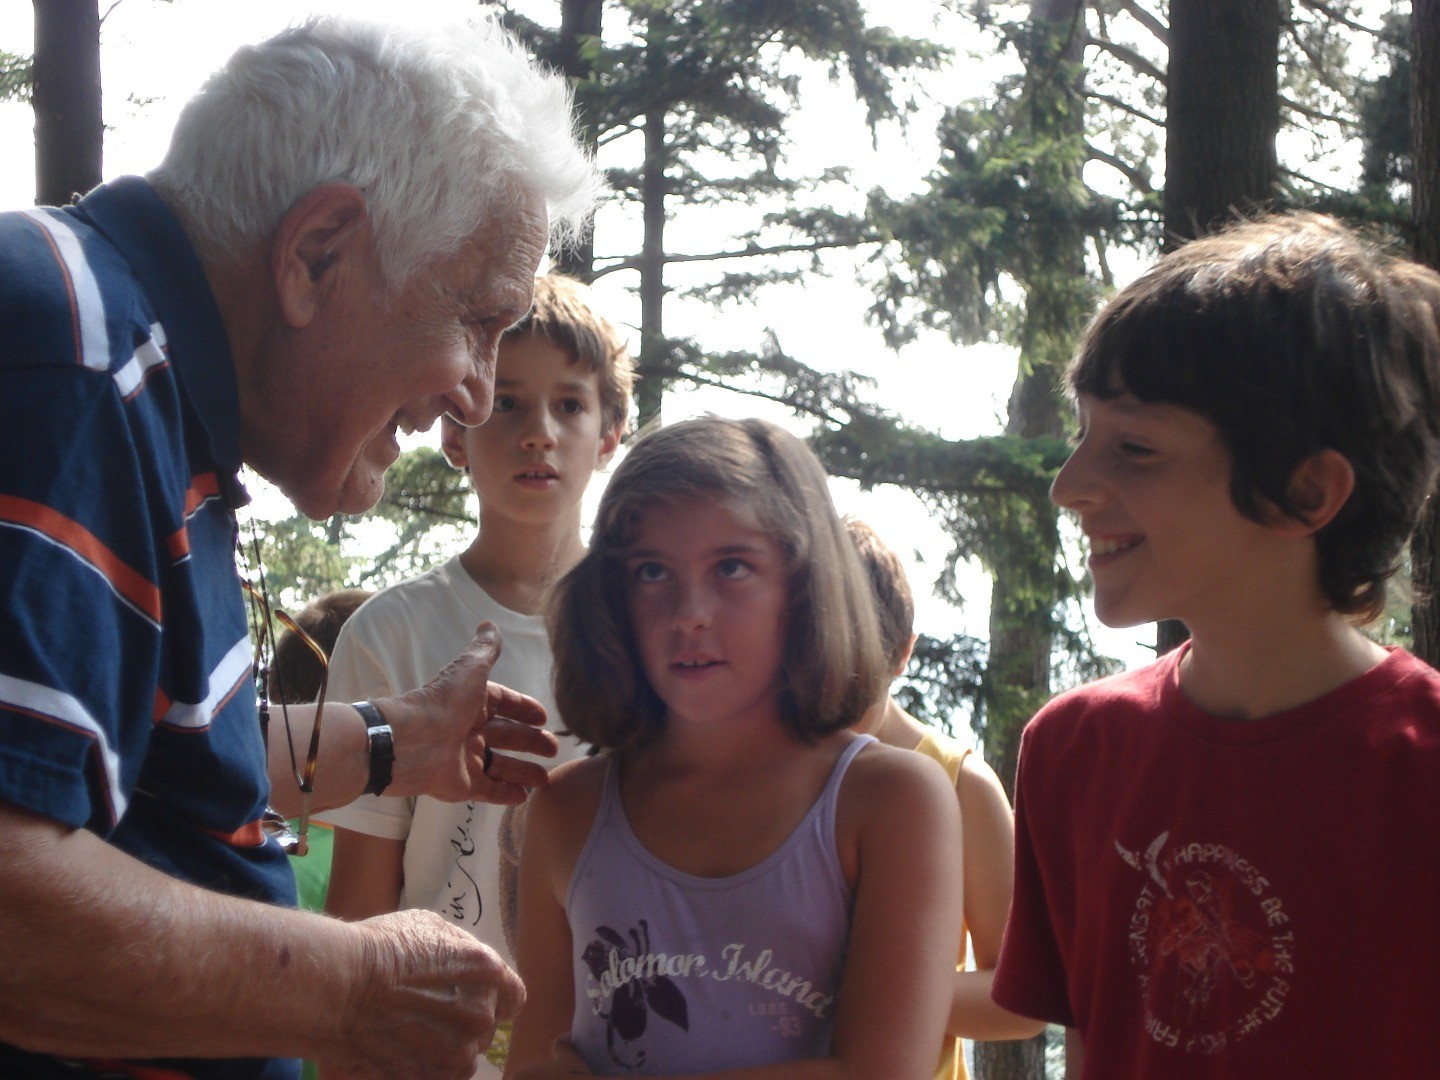 2008, Monte Senario, Firenze - Fratel Arturo all'incontro con i bambini organizzato da Ore undici